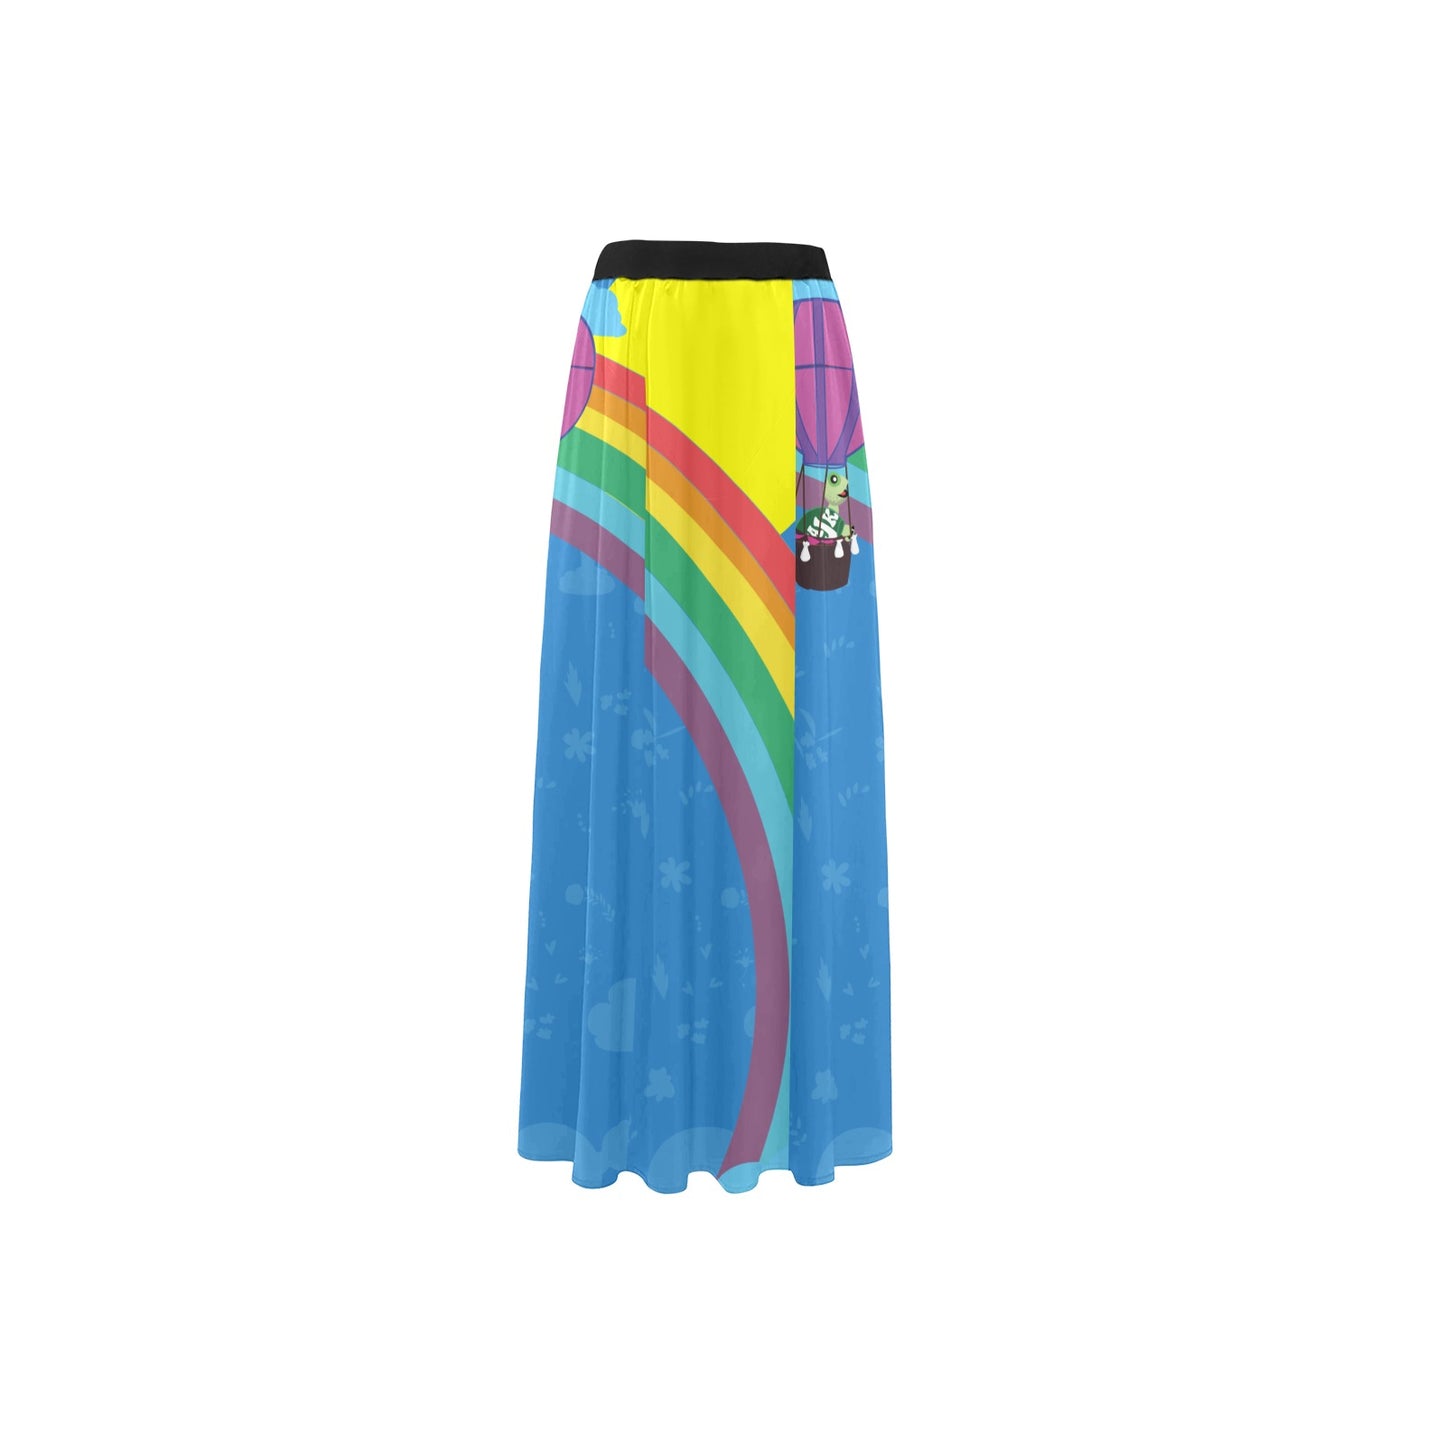 High Slit Long Beach Dress/skirt "Over the Rainbow"